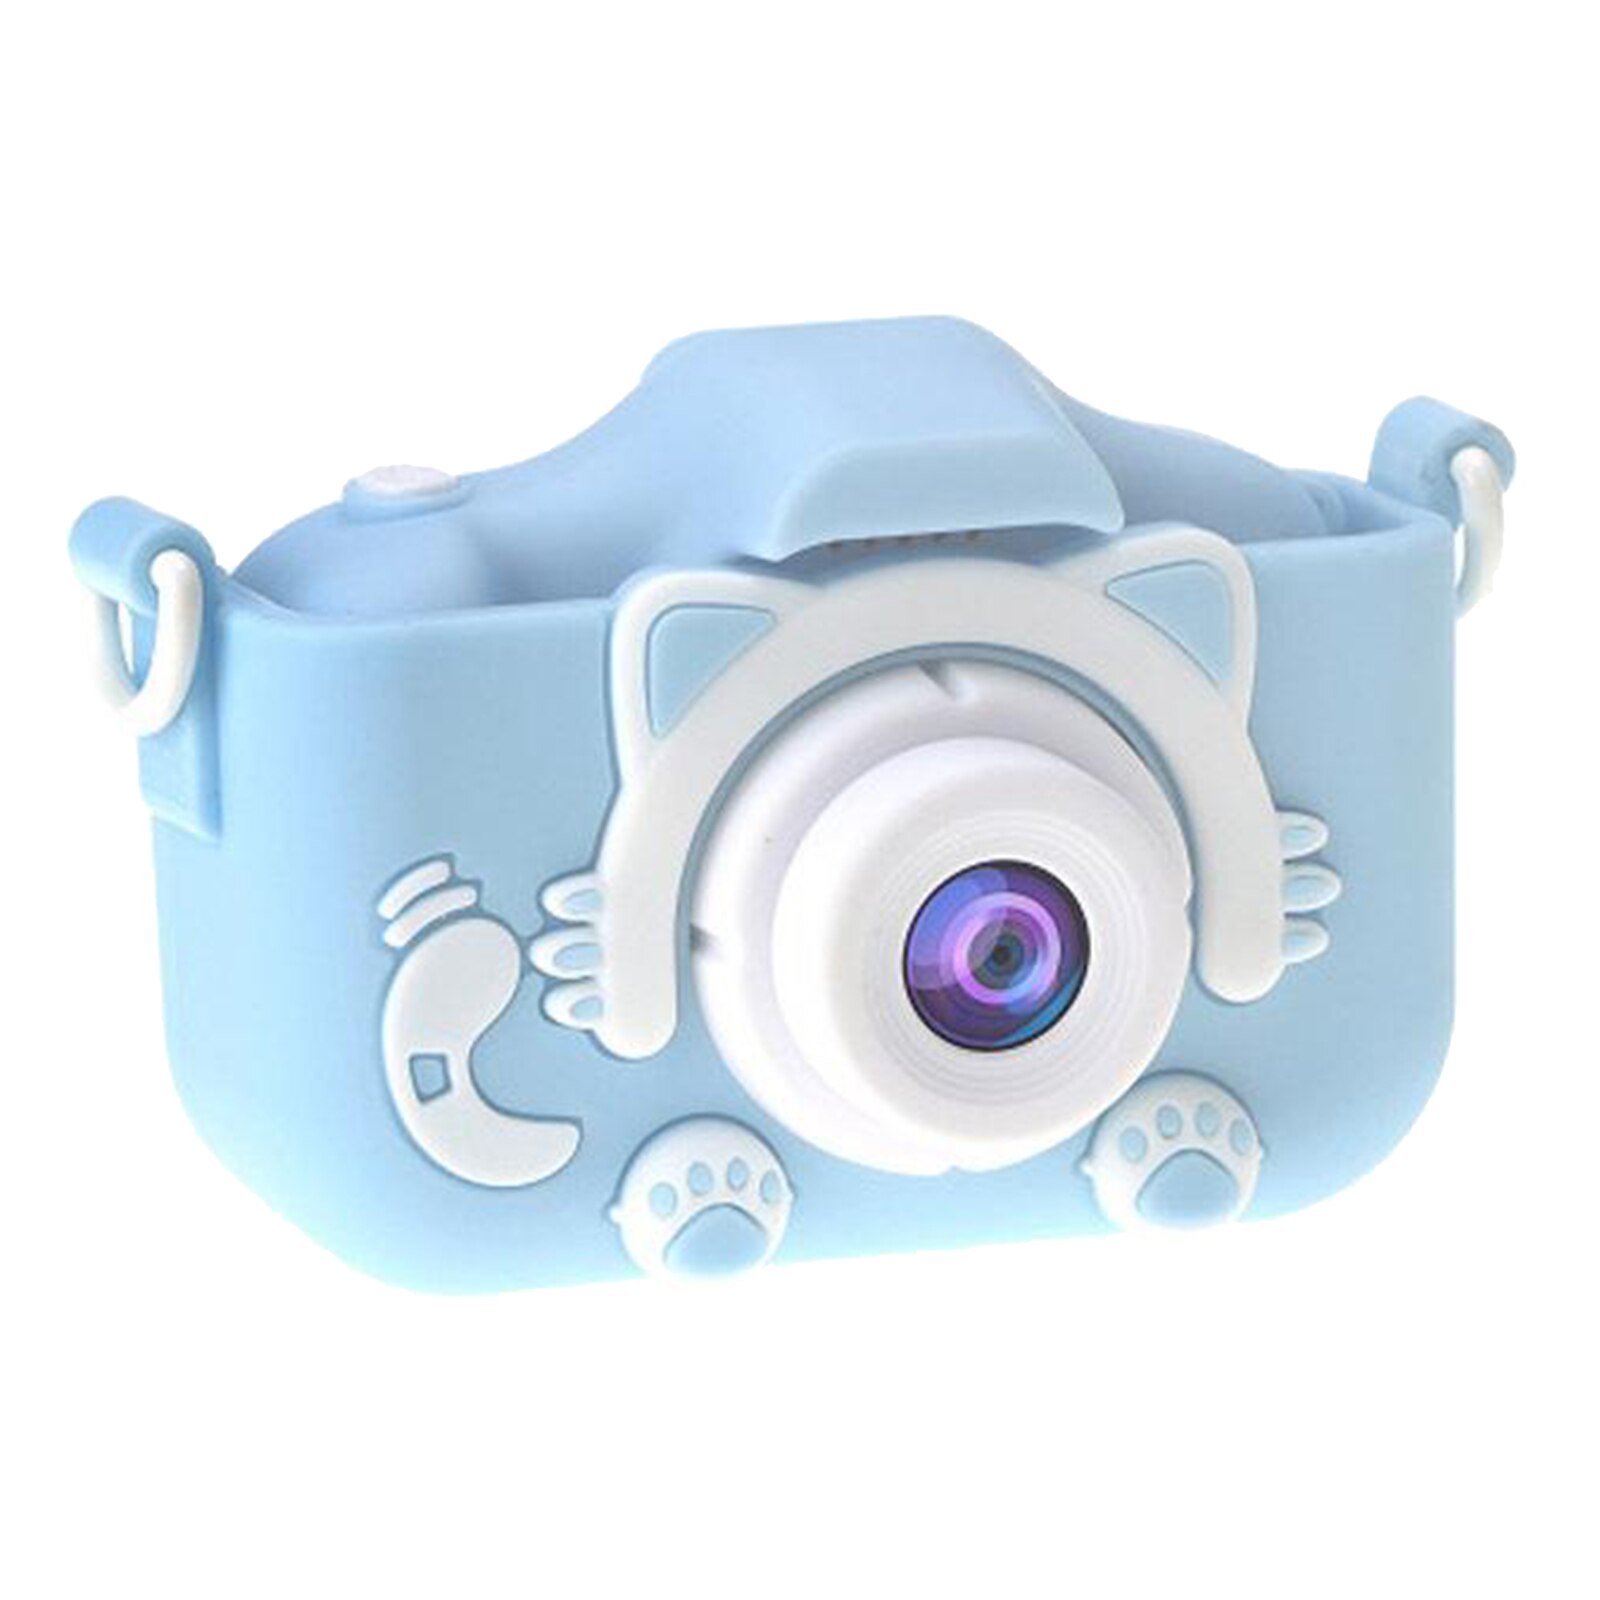 2.0 ''Mini Digitale Kinderen Camera Hd 1080P Ips Camera Speelgoed Cadeau Voor Kinderen